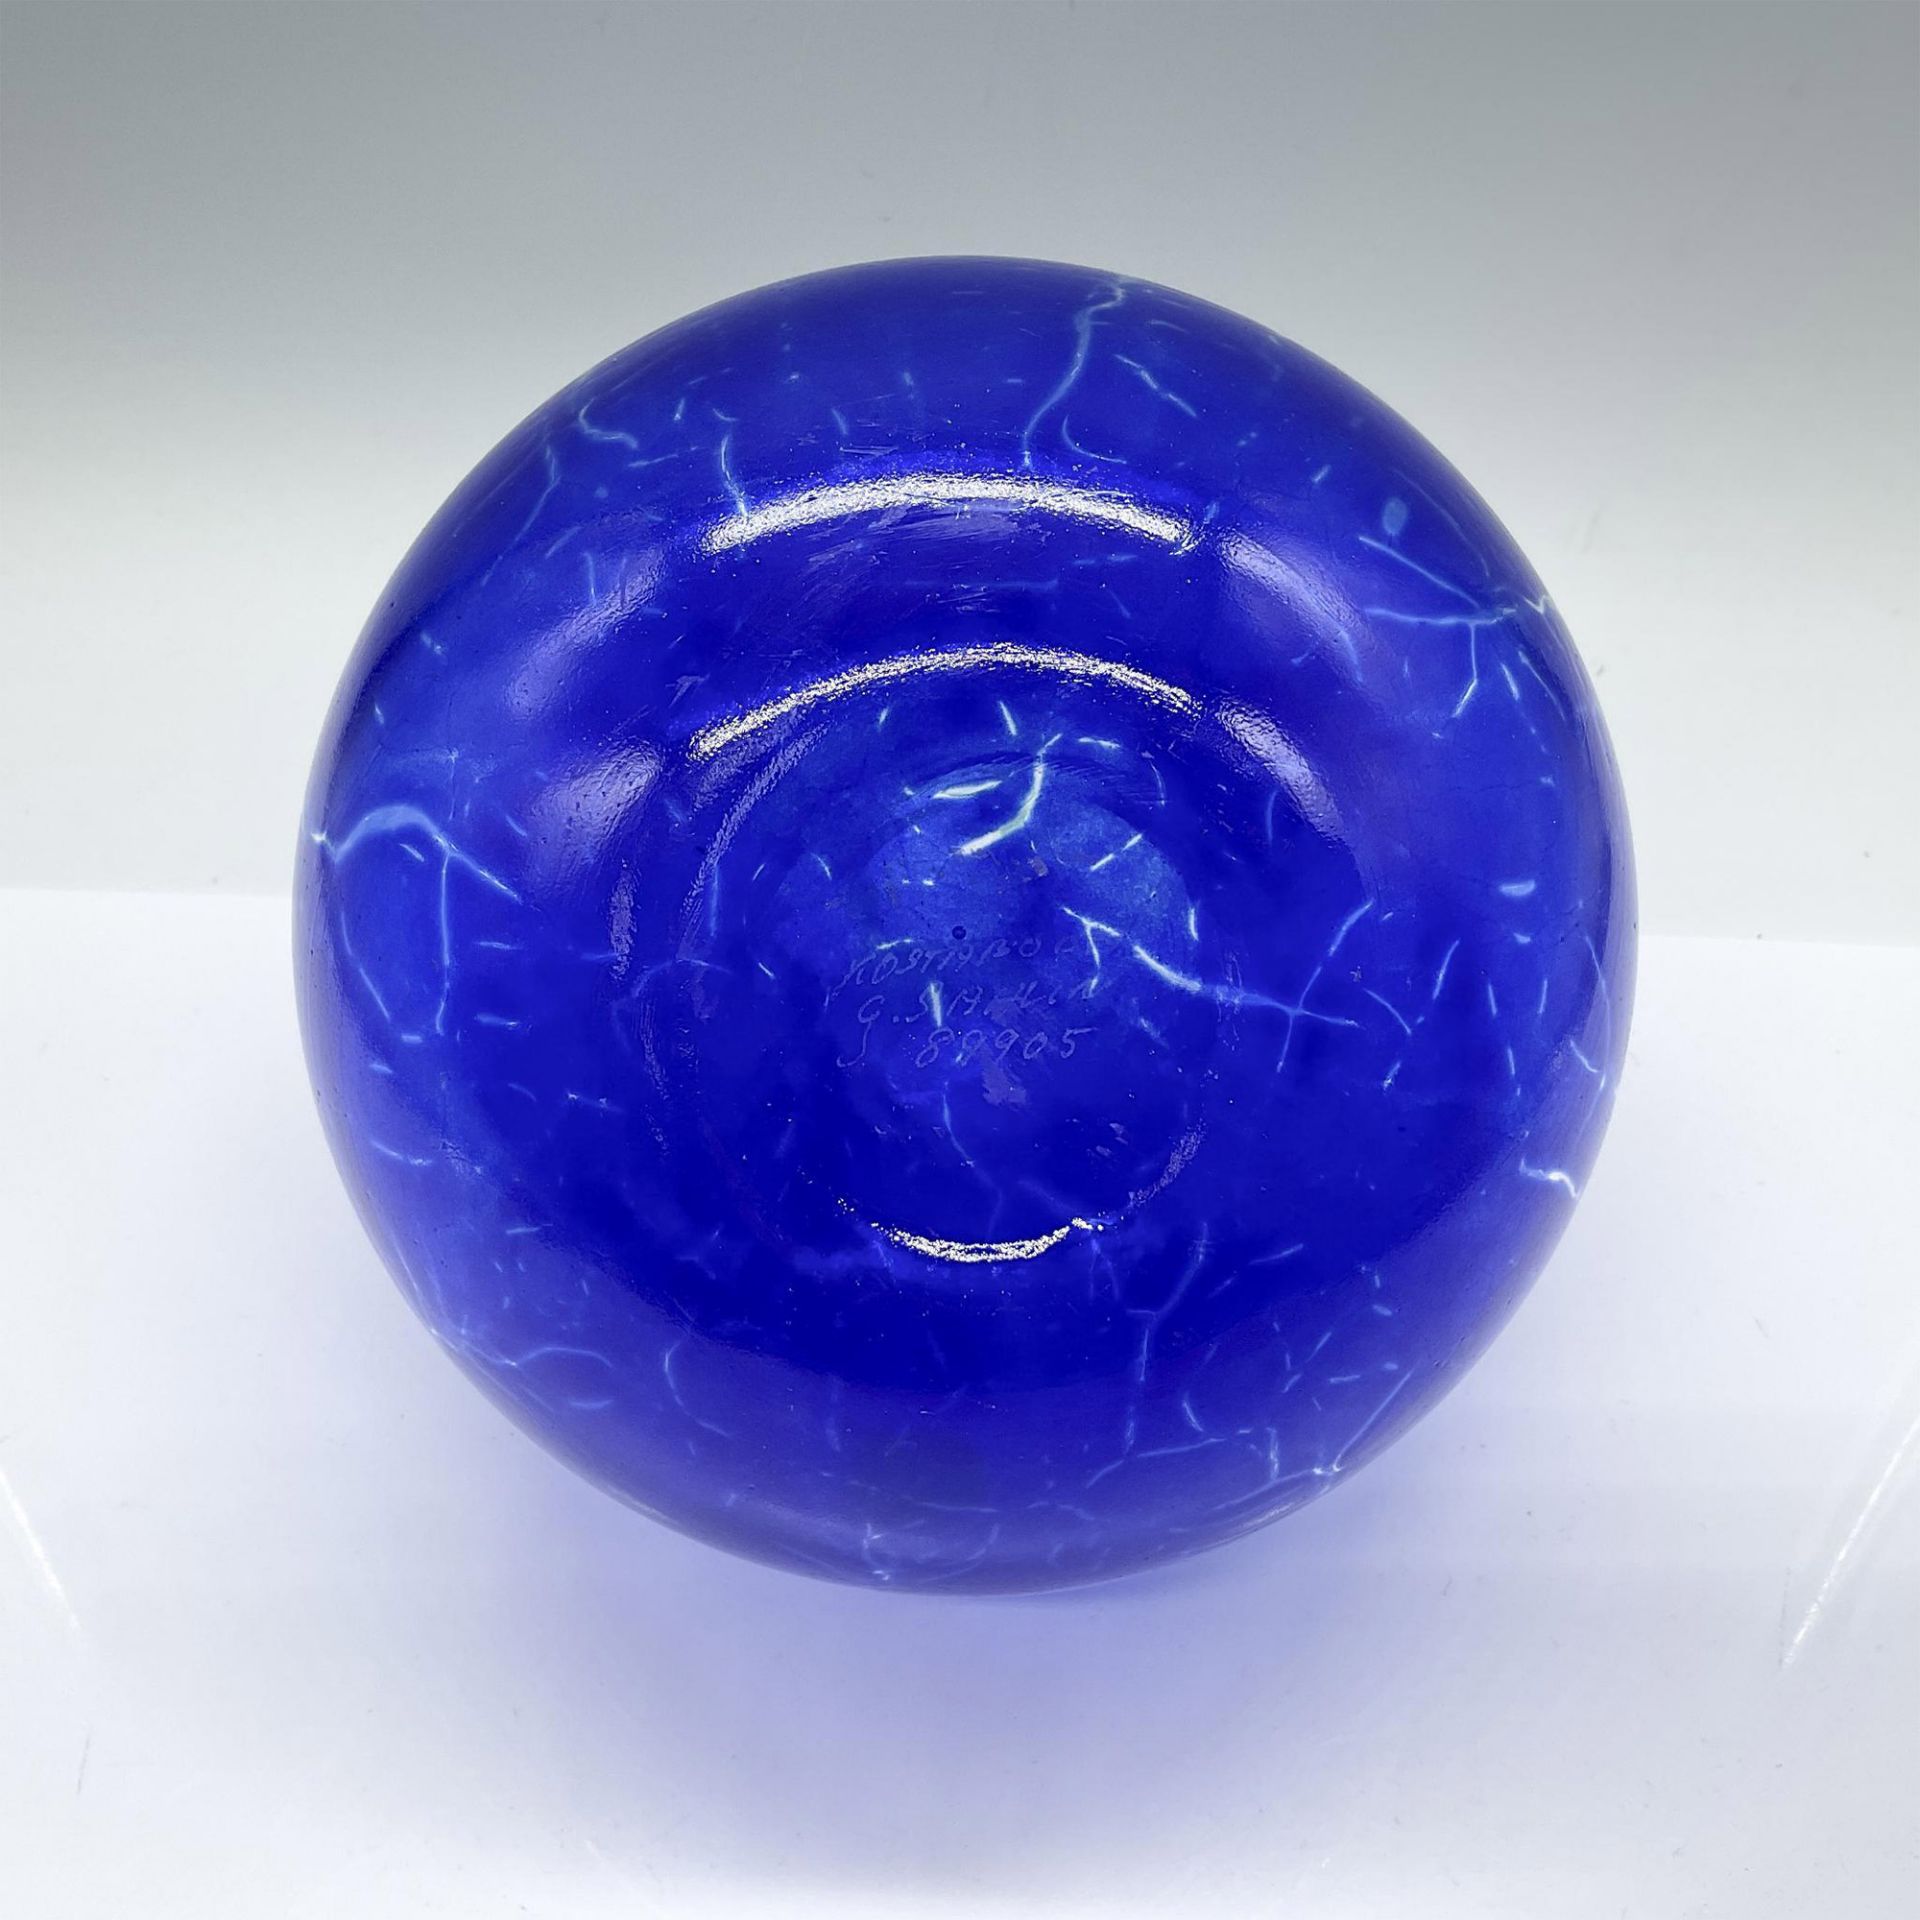 Gunnel Sahlin for Kosta Boda Blue Glass Vase - Image 3 of 3